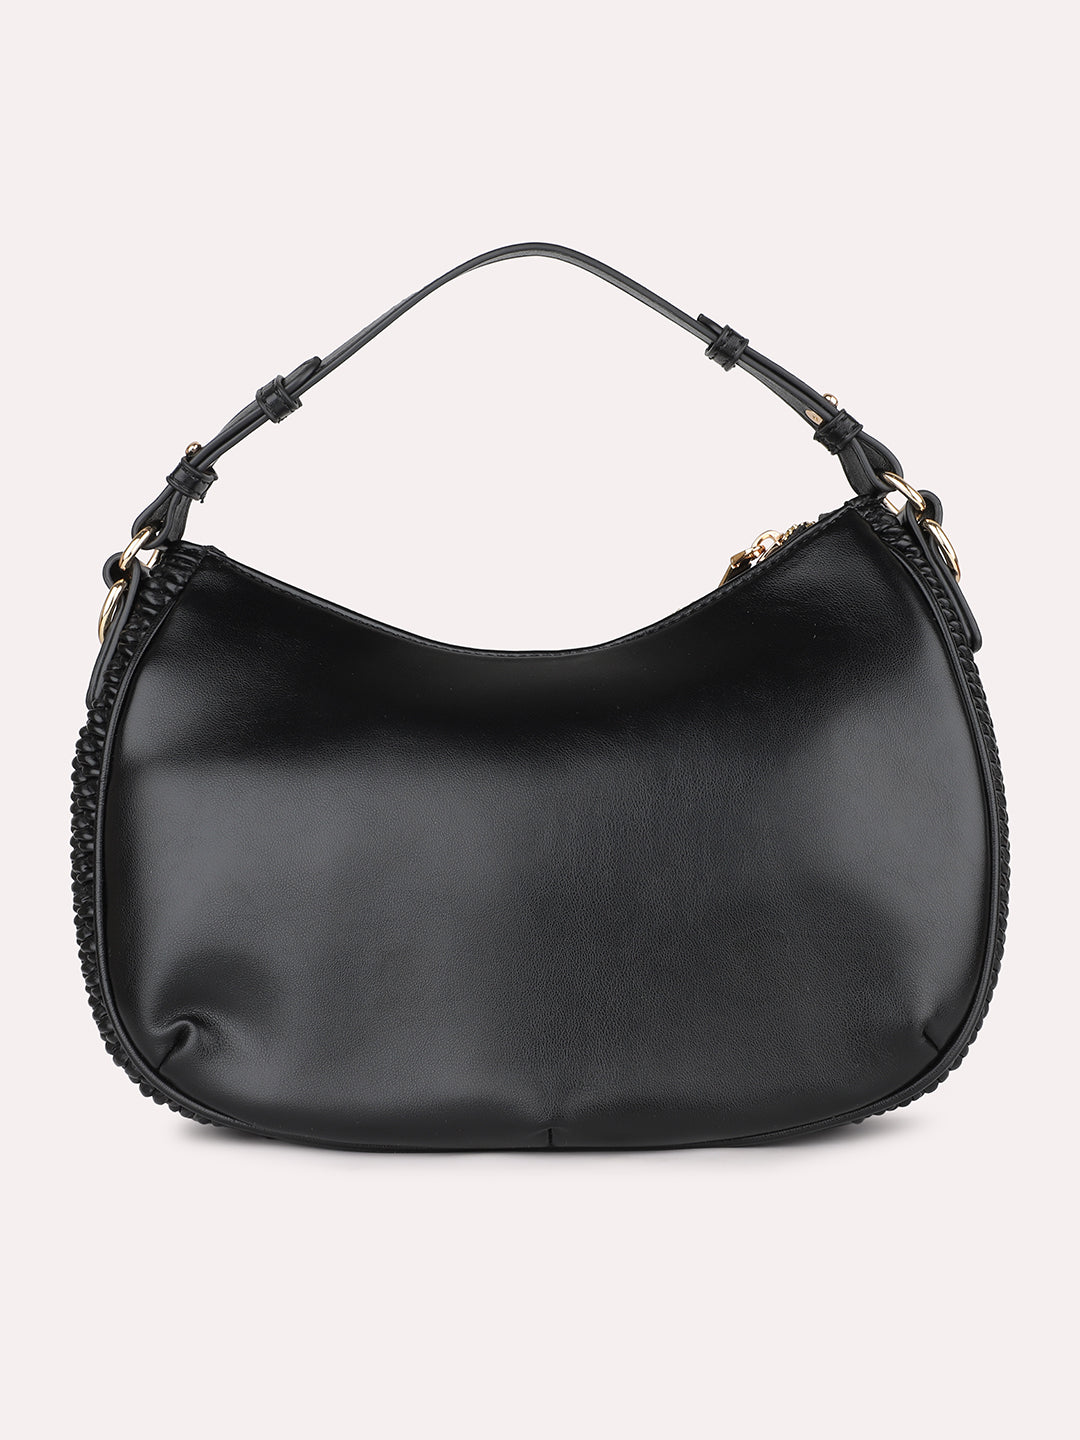 Quilt Black Structured Handheld Hobo Bag